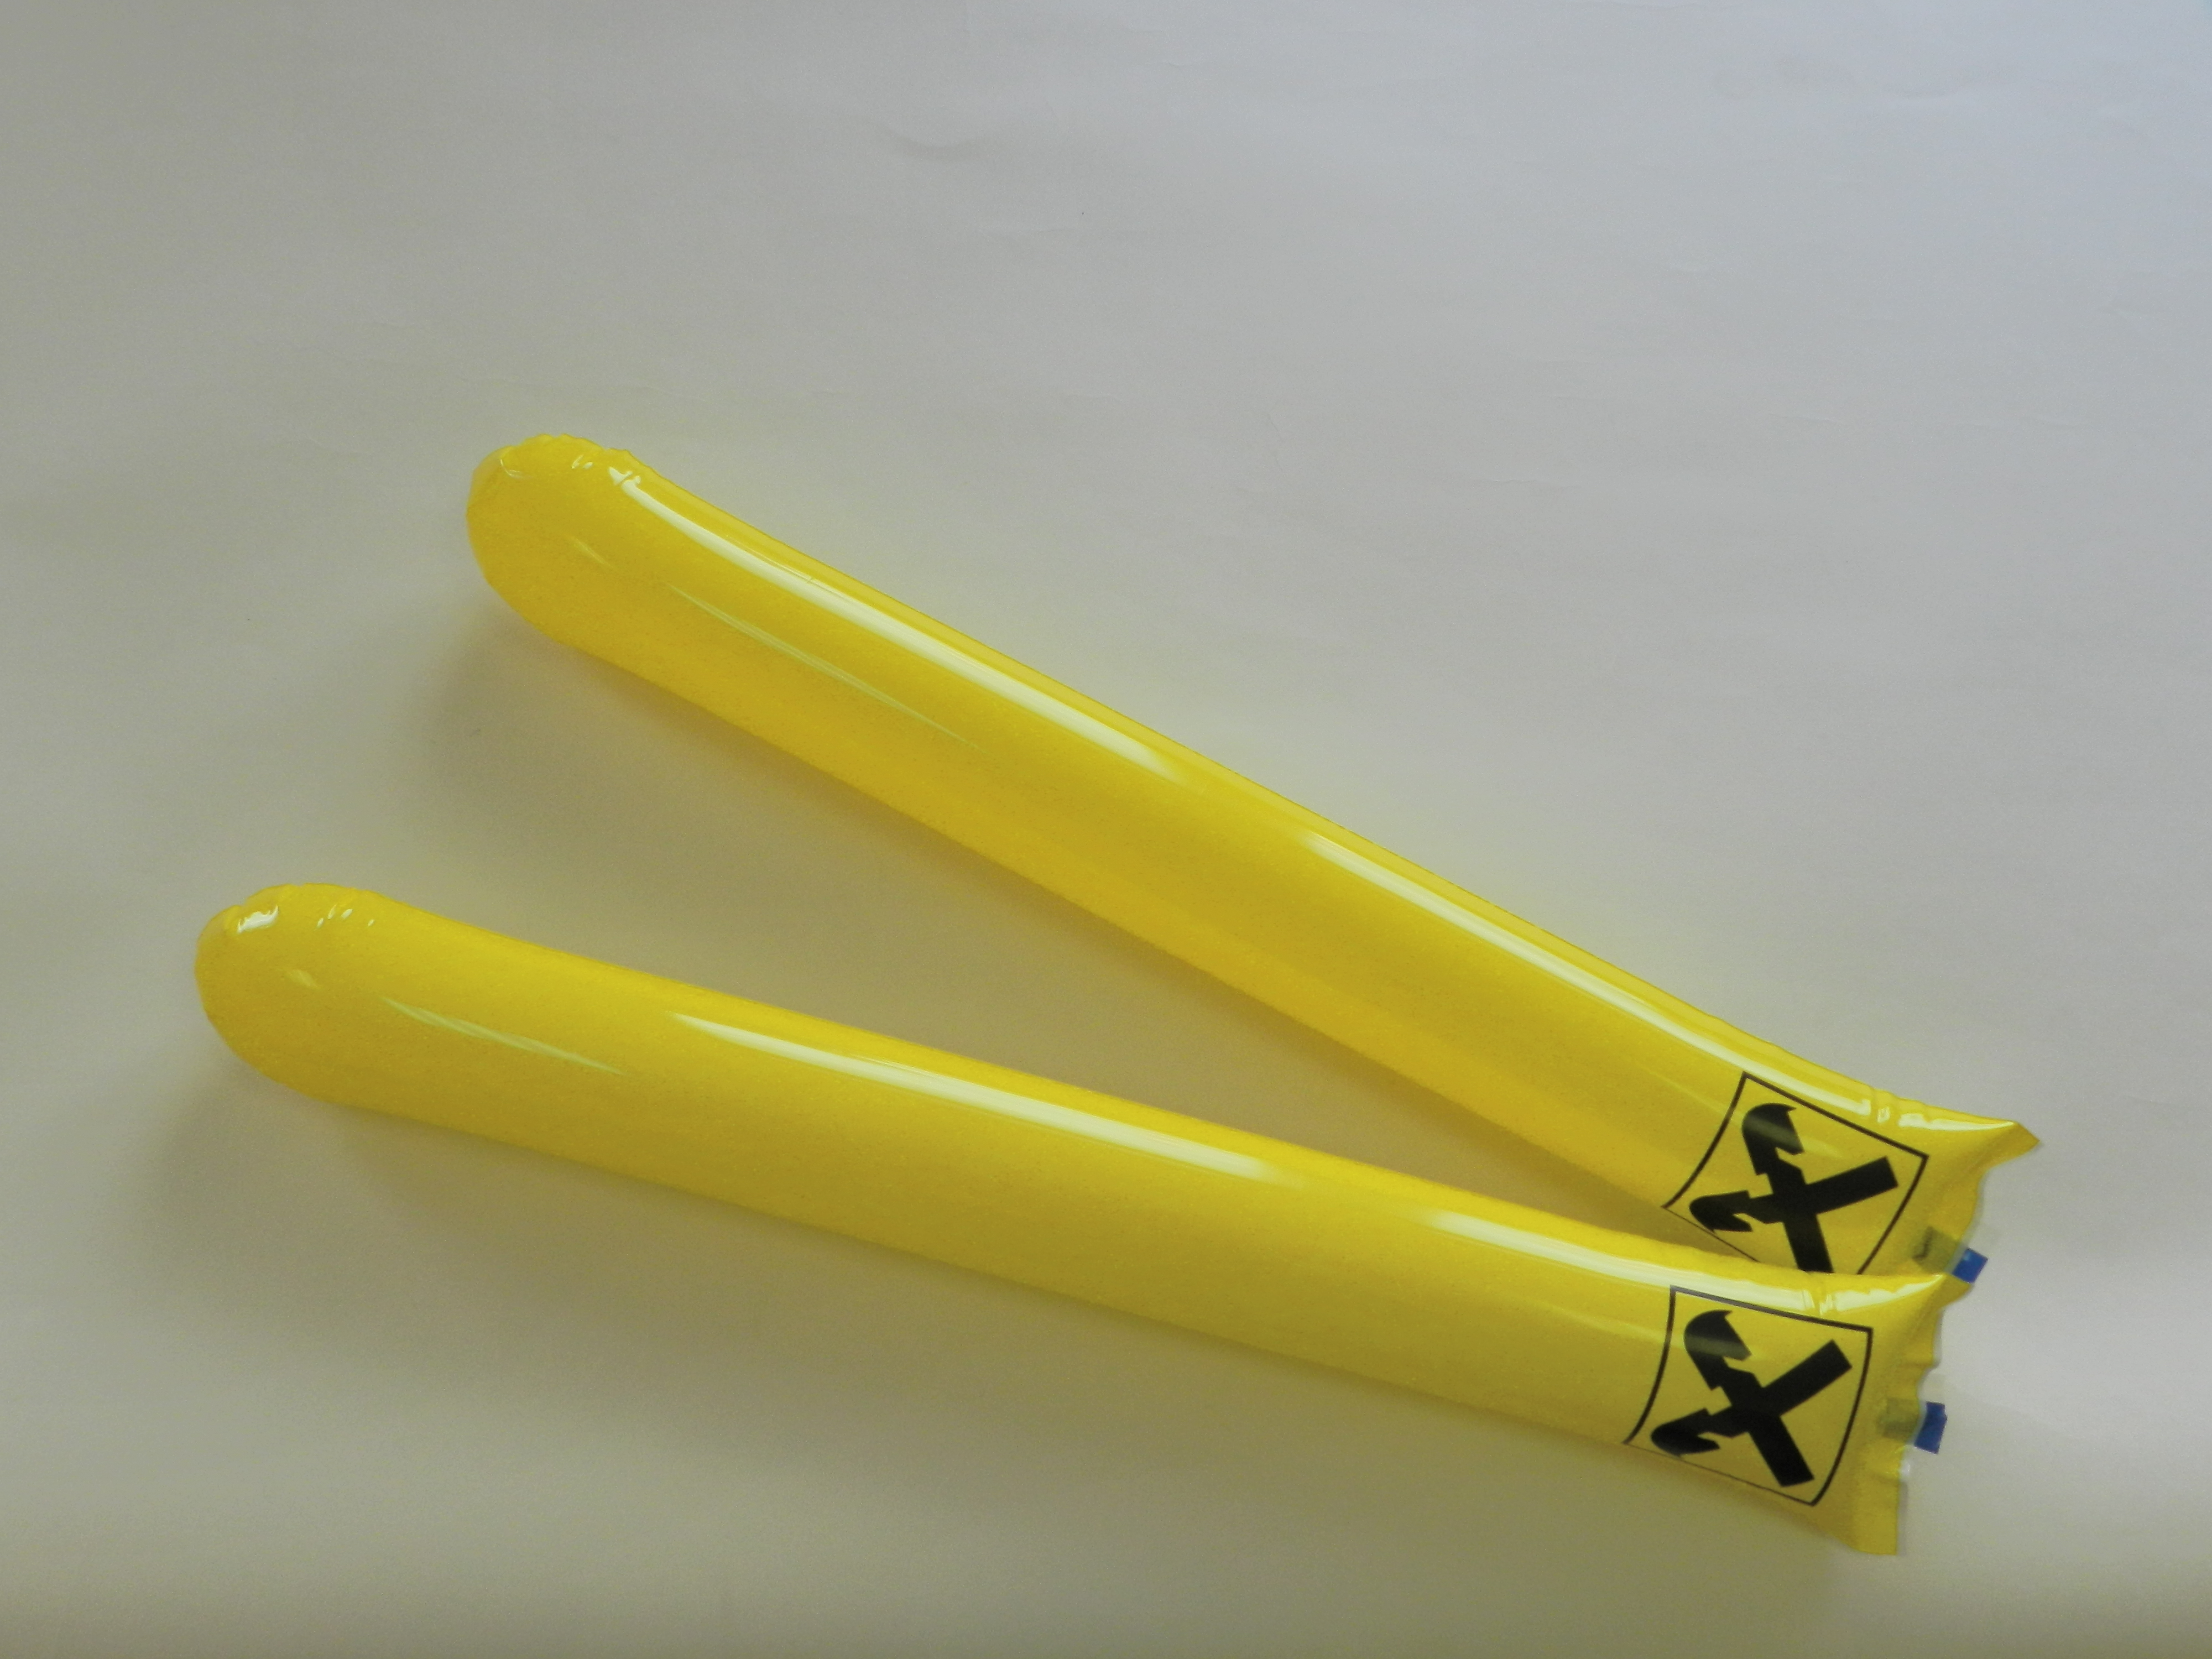 Надувные палки стучалки с печатью 3+3, два желтых, Атрибутика для поддержки